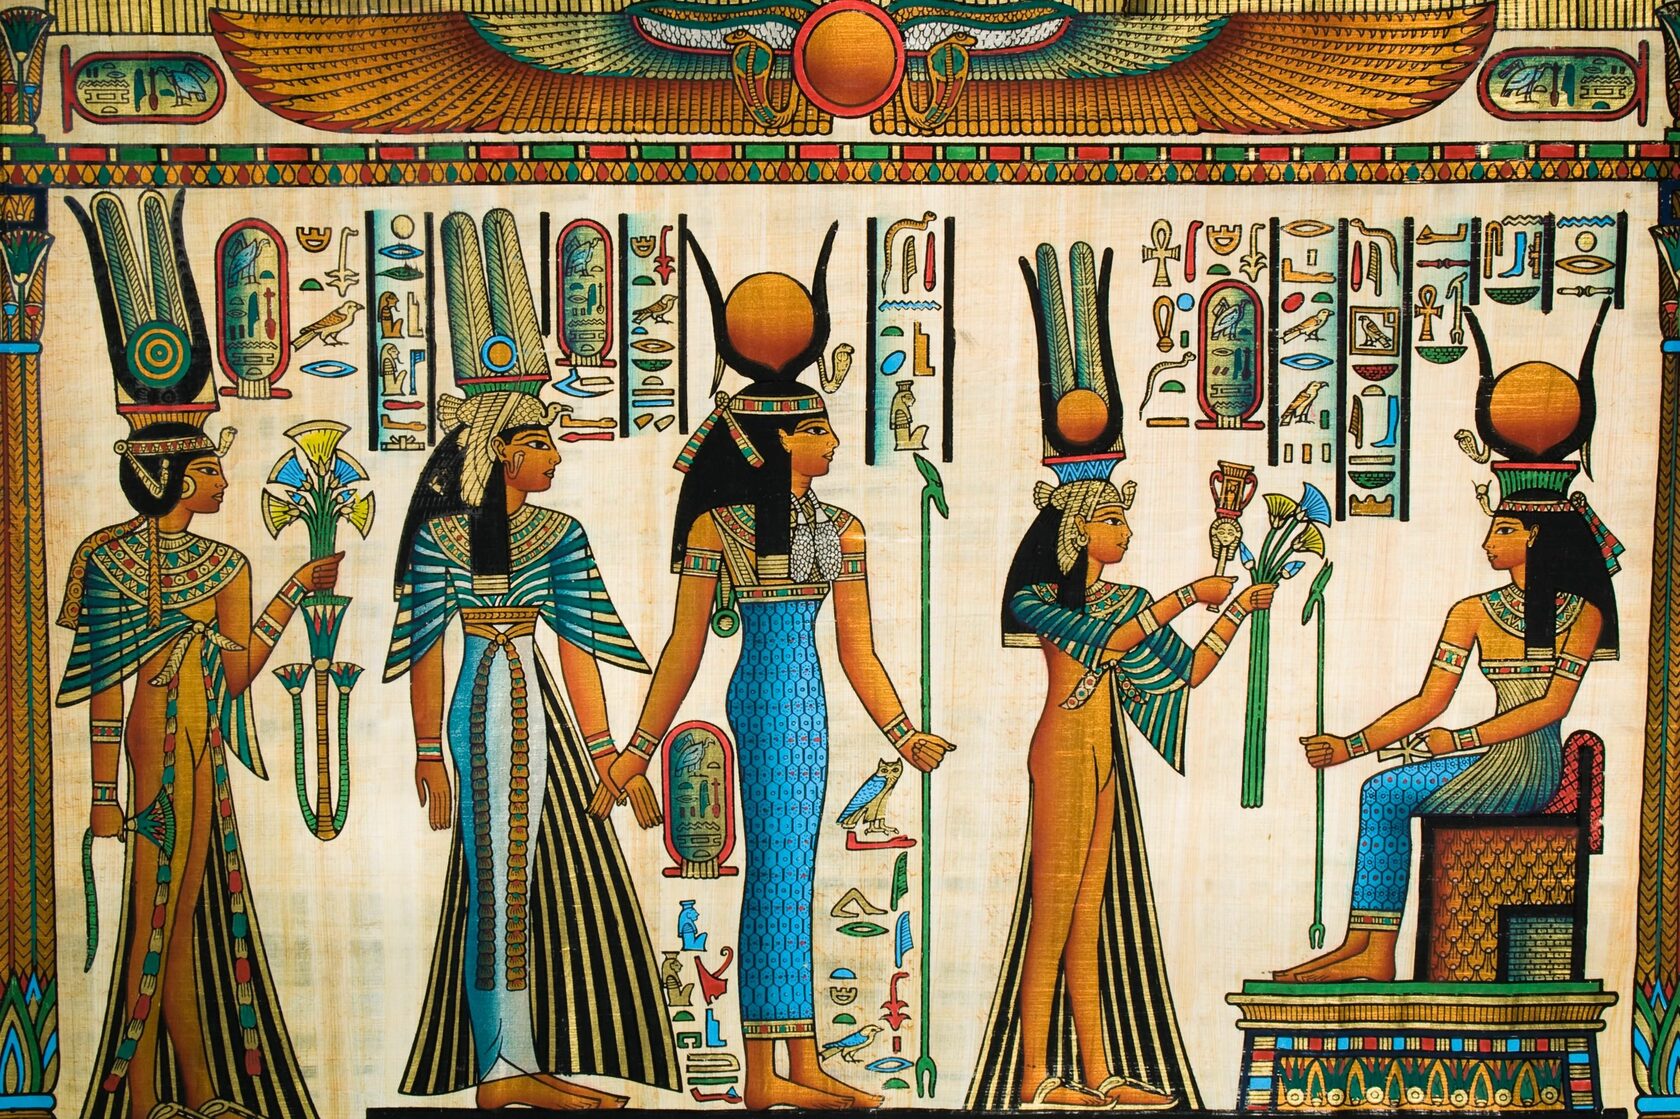 древний египет описание